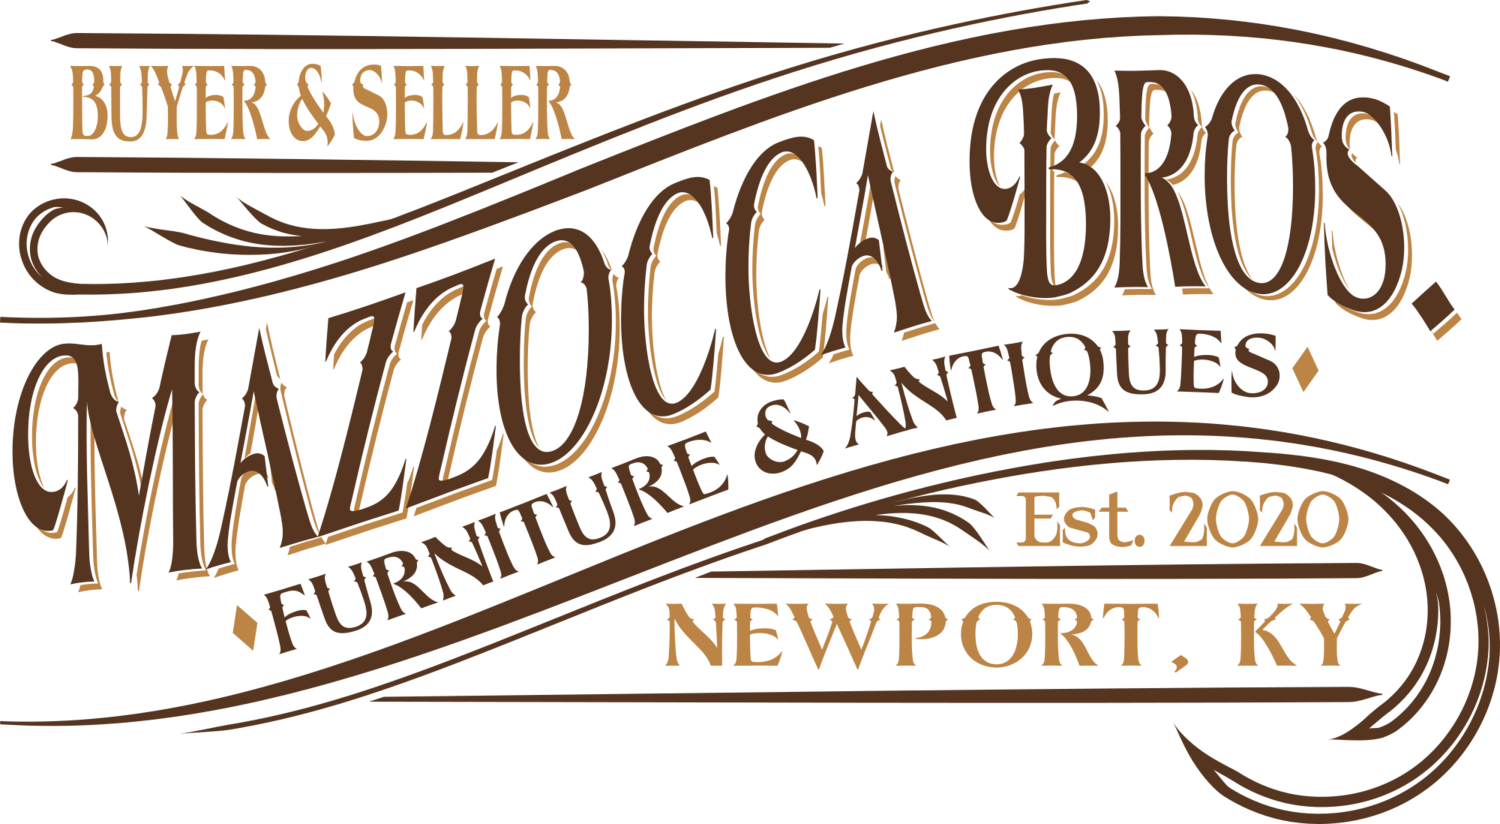 Mazzocca Bros. Furniture &amp; Antiques